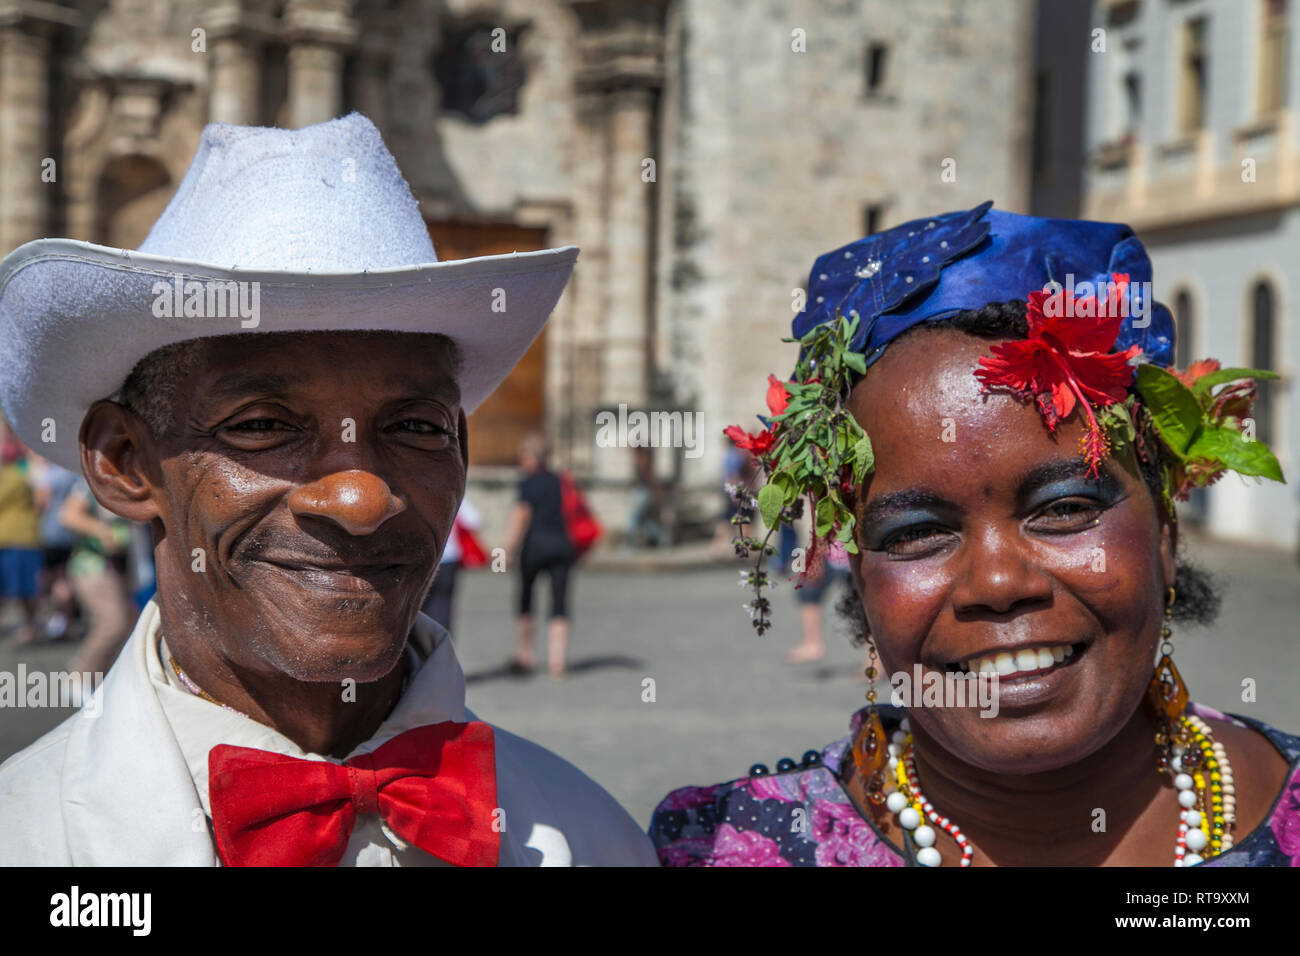 L'Avana, Cuba - 24 Gennaio 2013: Ritratti del popolo cubano in abiti tradizionali. Un vecchio paio di Cuba in un costume tradizionale. Foto Stock